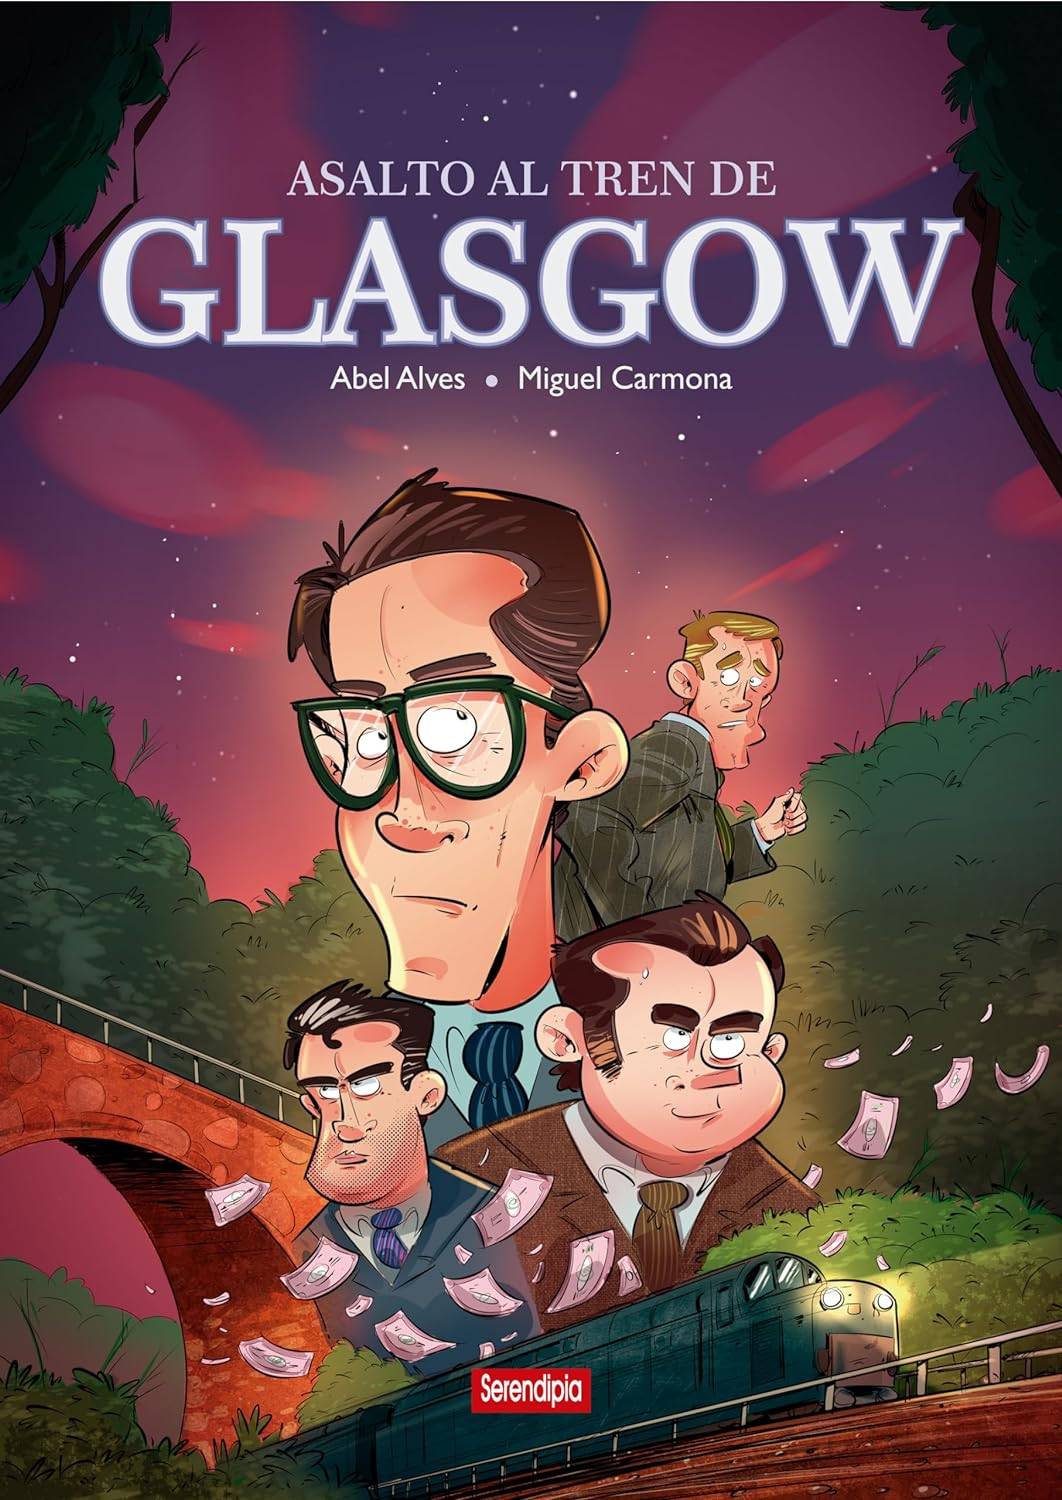 Reseña de «Asalto al tren de Glasgow», una revisión en cómic del robo del siglo.